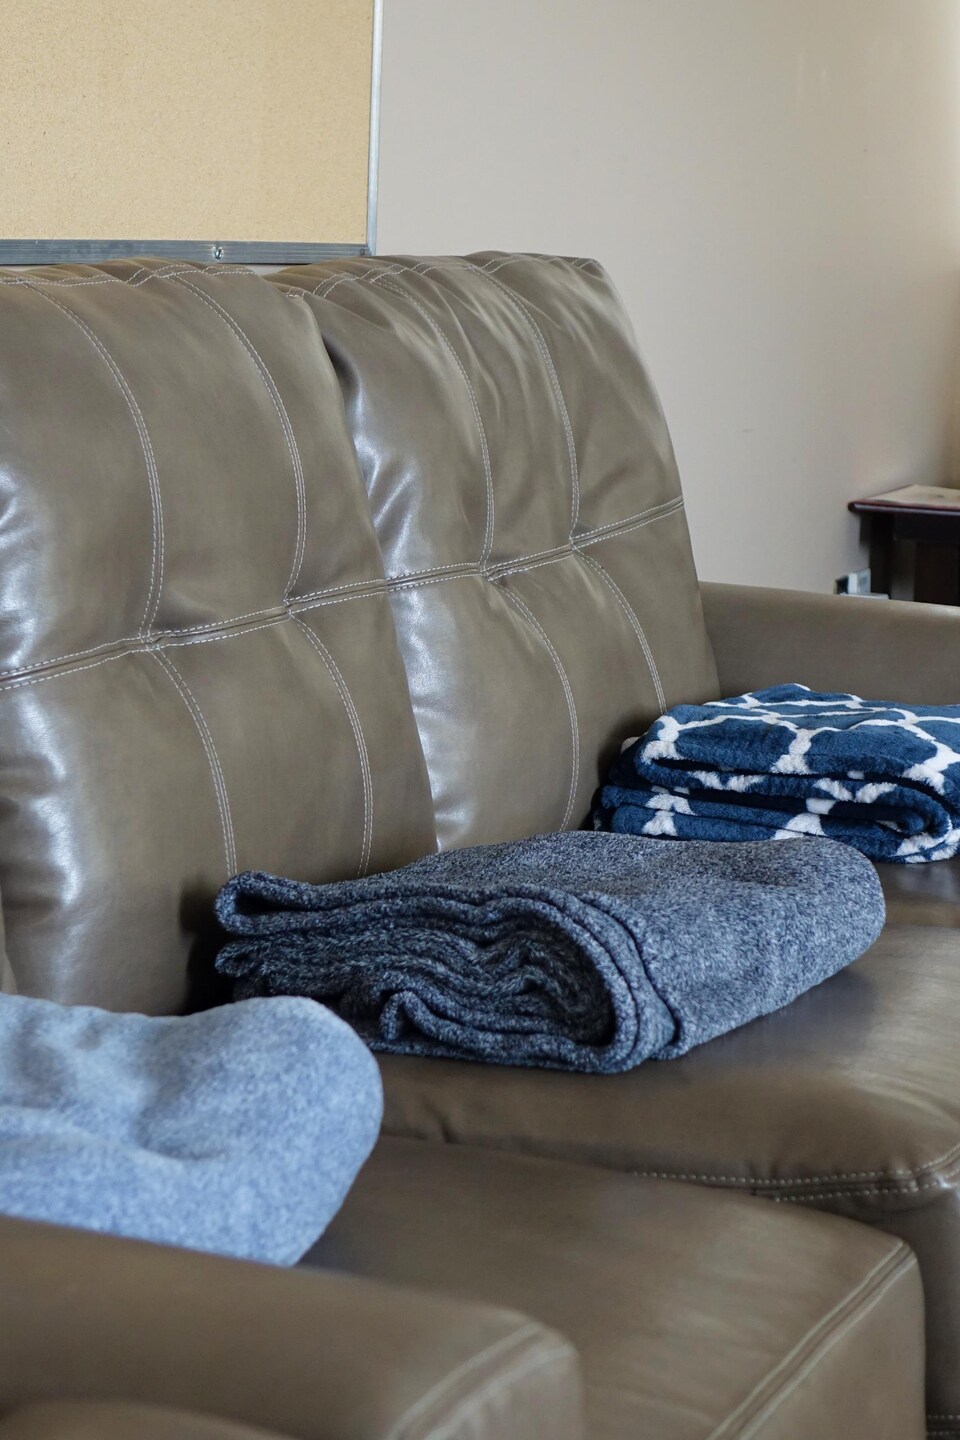 Un sofa sur lequel on a déposé des couvertures pour le confort des patientes.